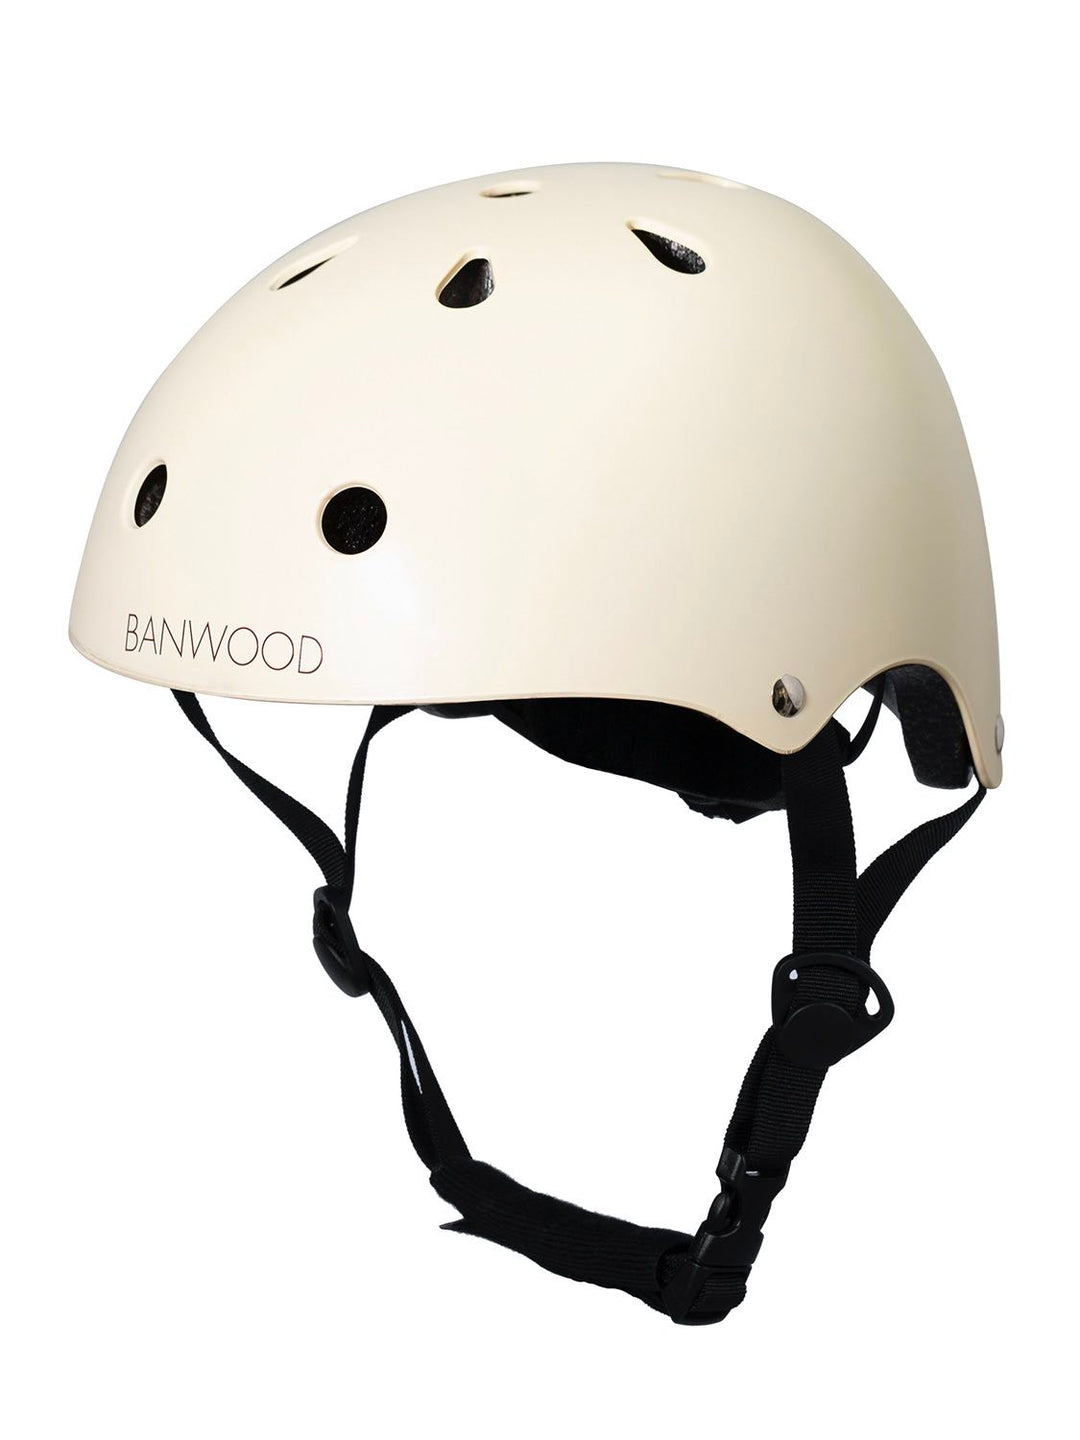 Banwood Classic Helmet in Cream